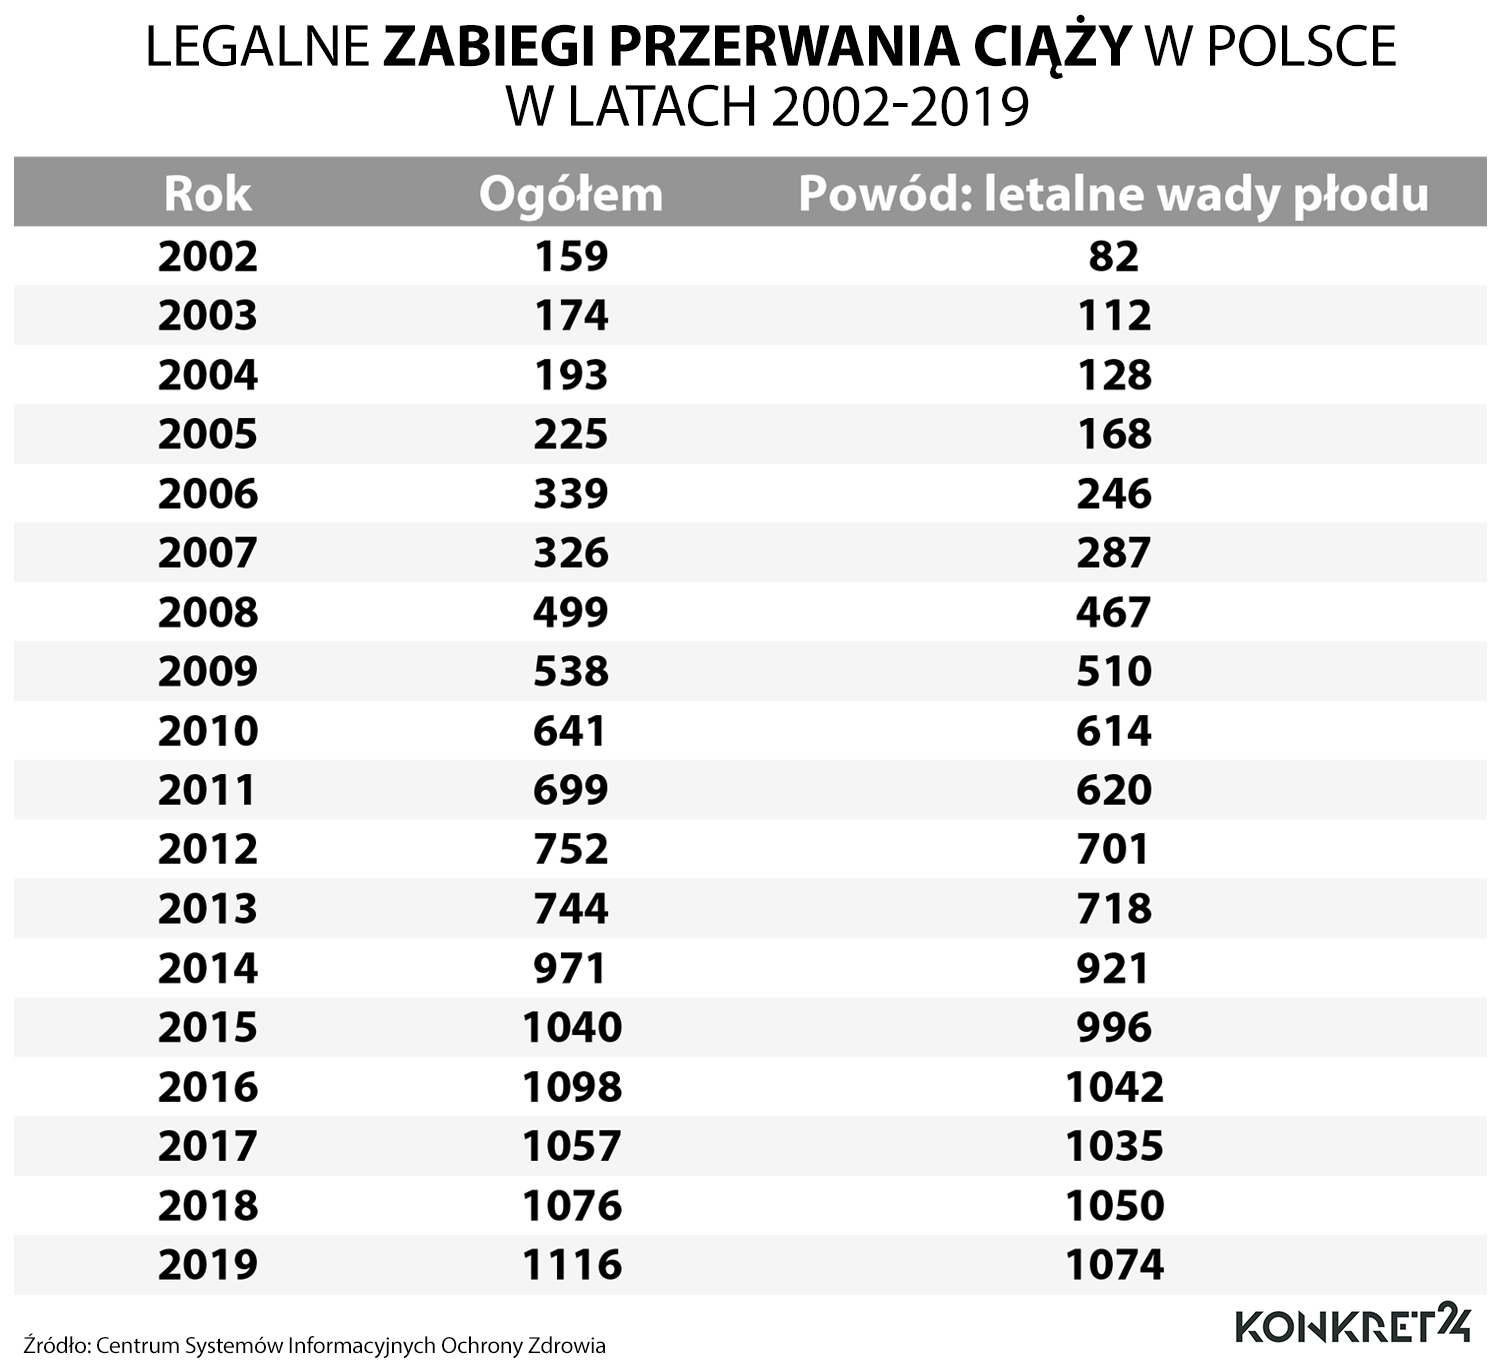 Legalne zabiegi przerwania ciąży w Polsce w latach 2002-2019